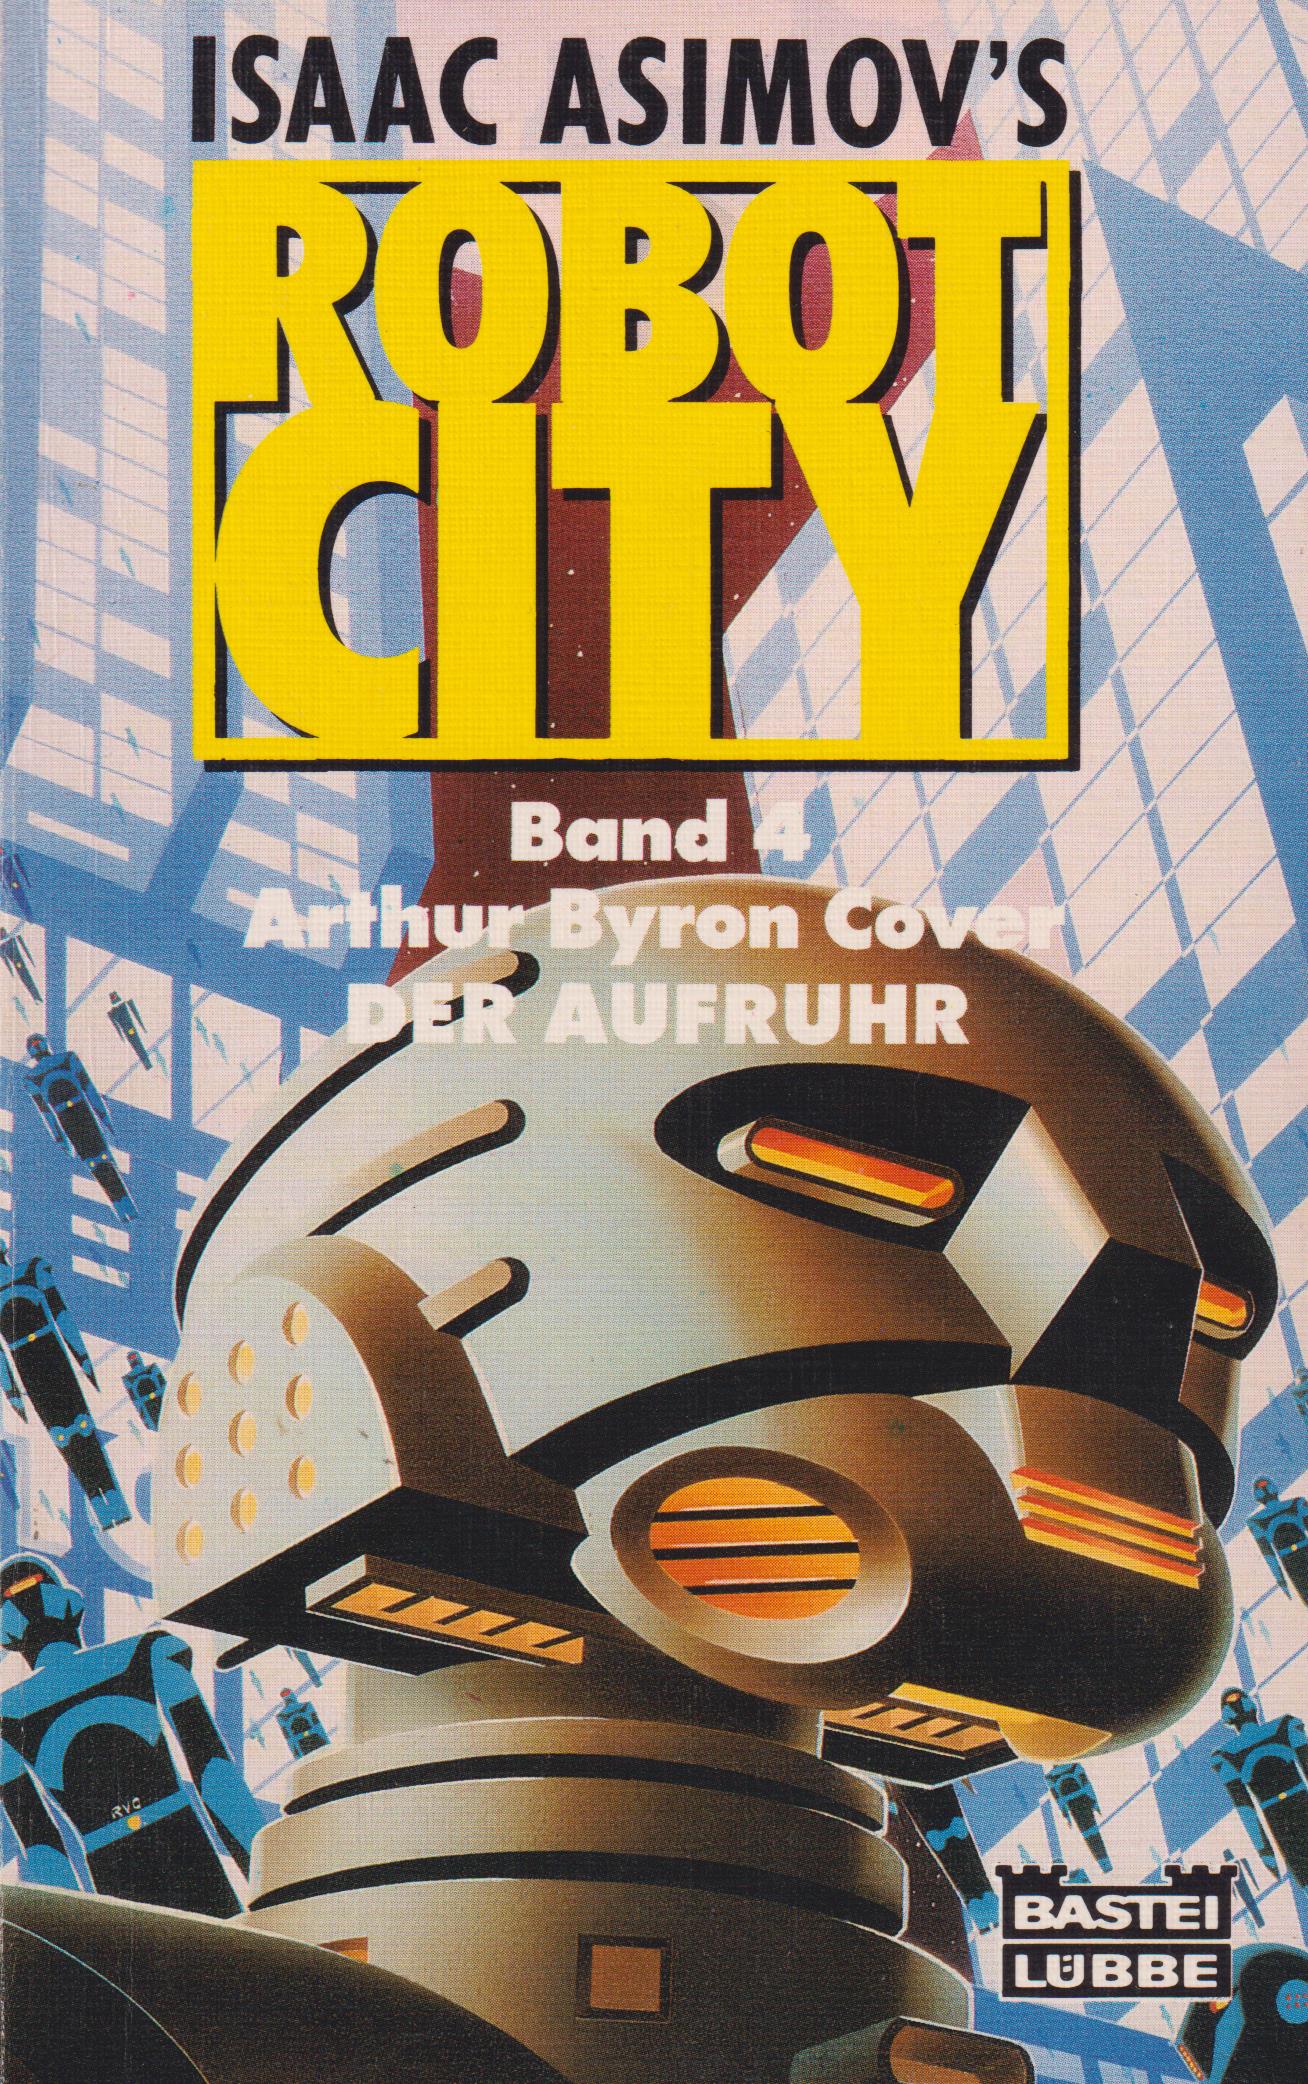 Isaac Asimov's Robot City, Band 4: Der Aufruhr - Cover, Arthur Byron